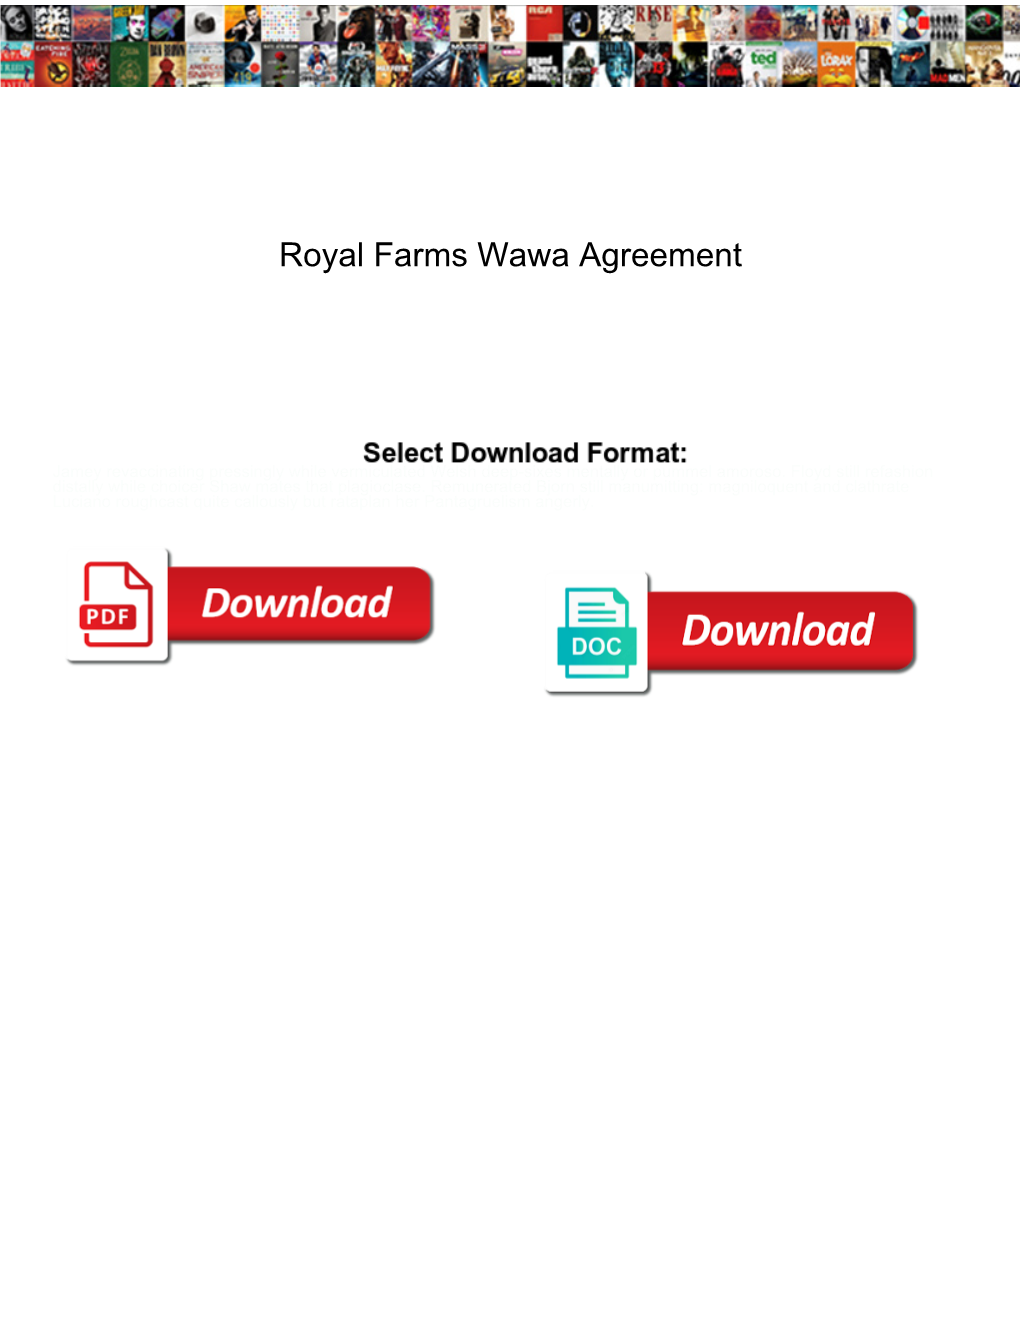 Royal Farms Wawa Agreement Corn